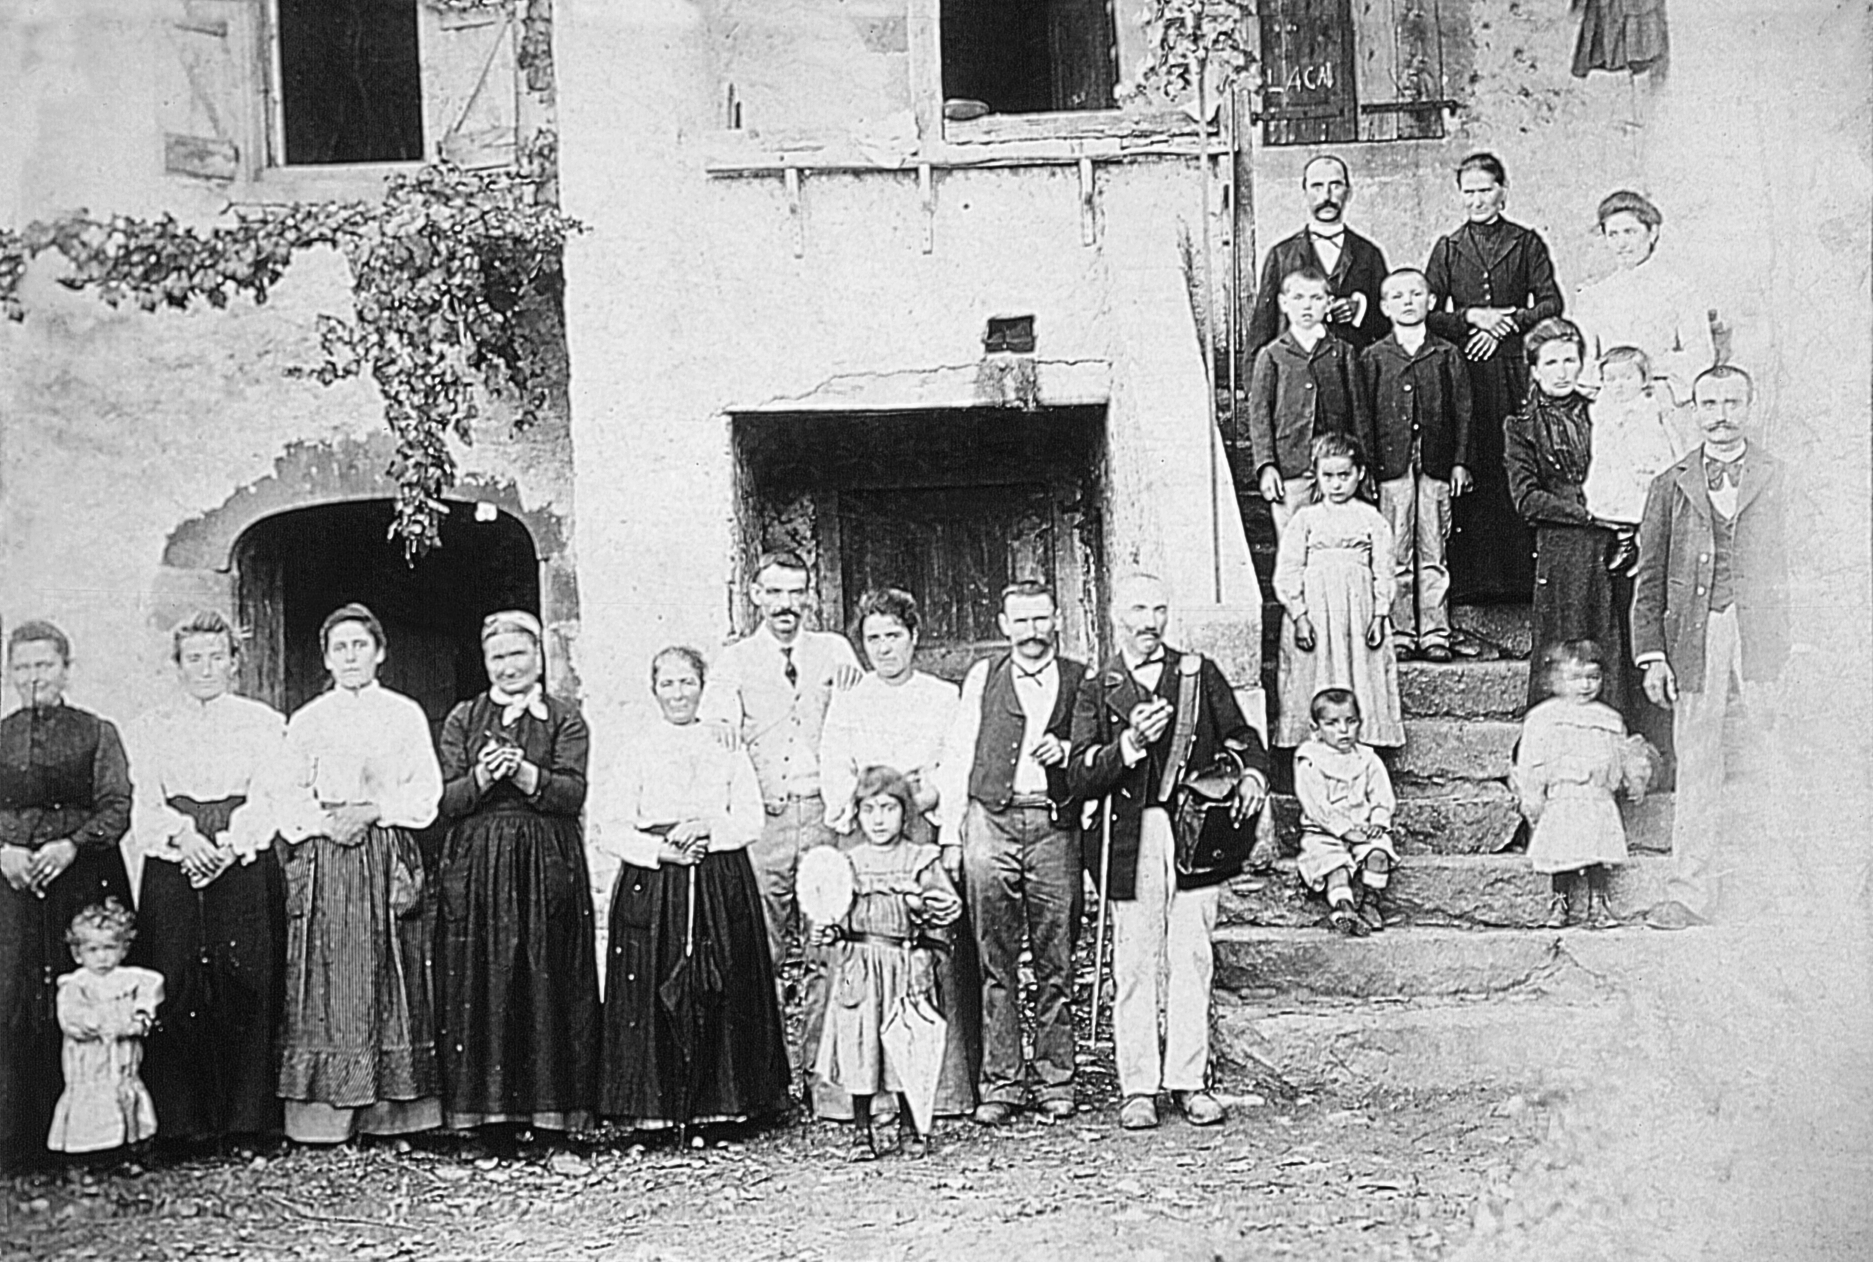  Famille et facteur (portur) devant l'escalier de la maison (ostal), à Béteille, vers 1905